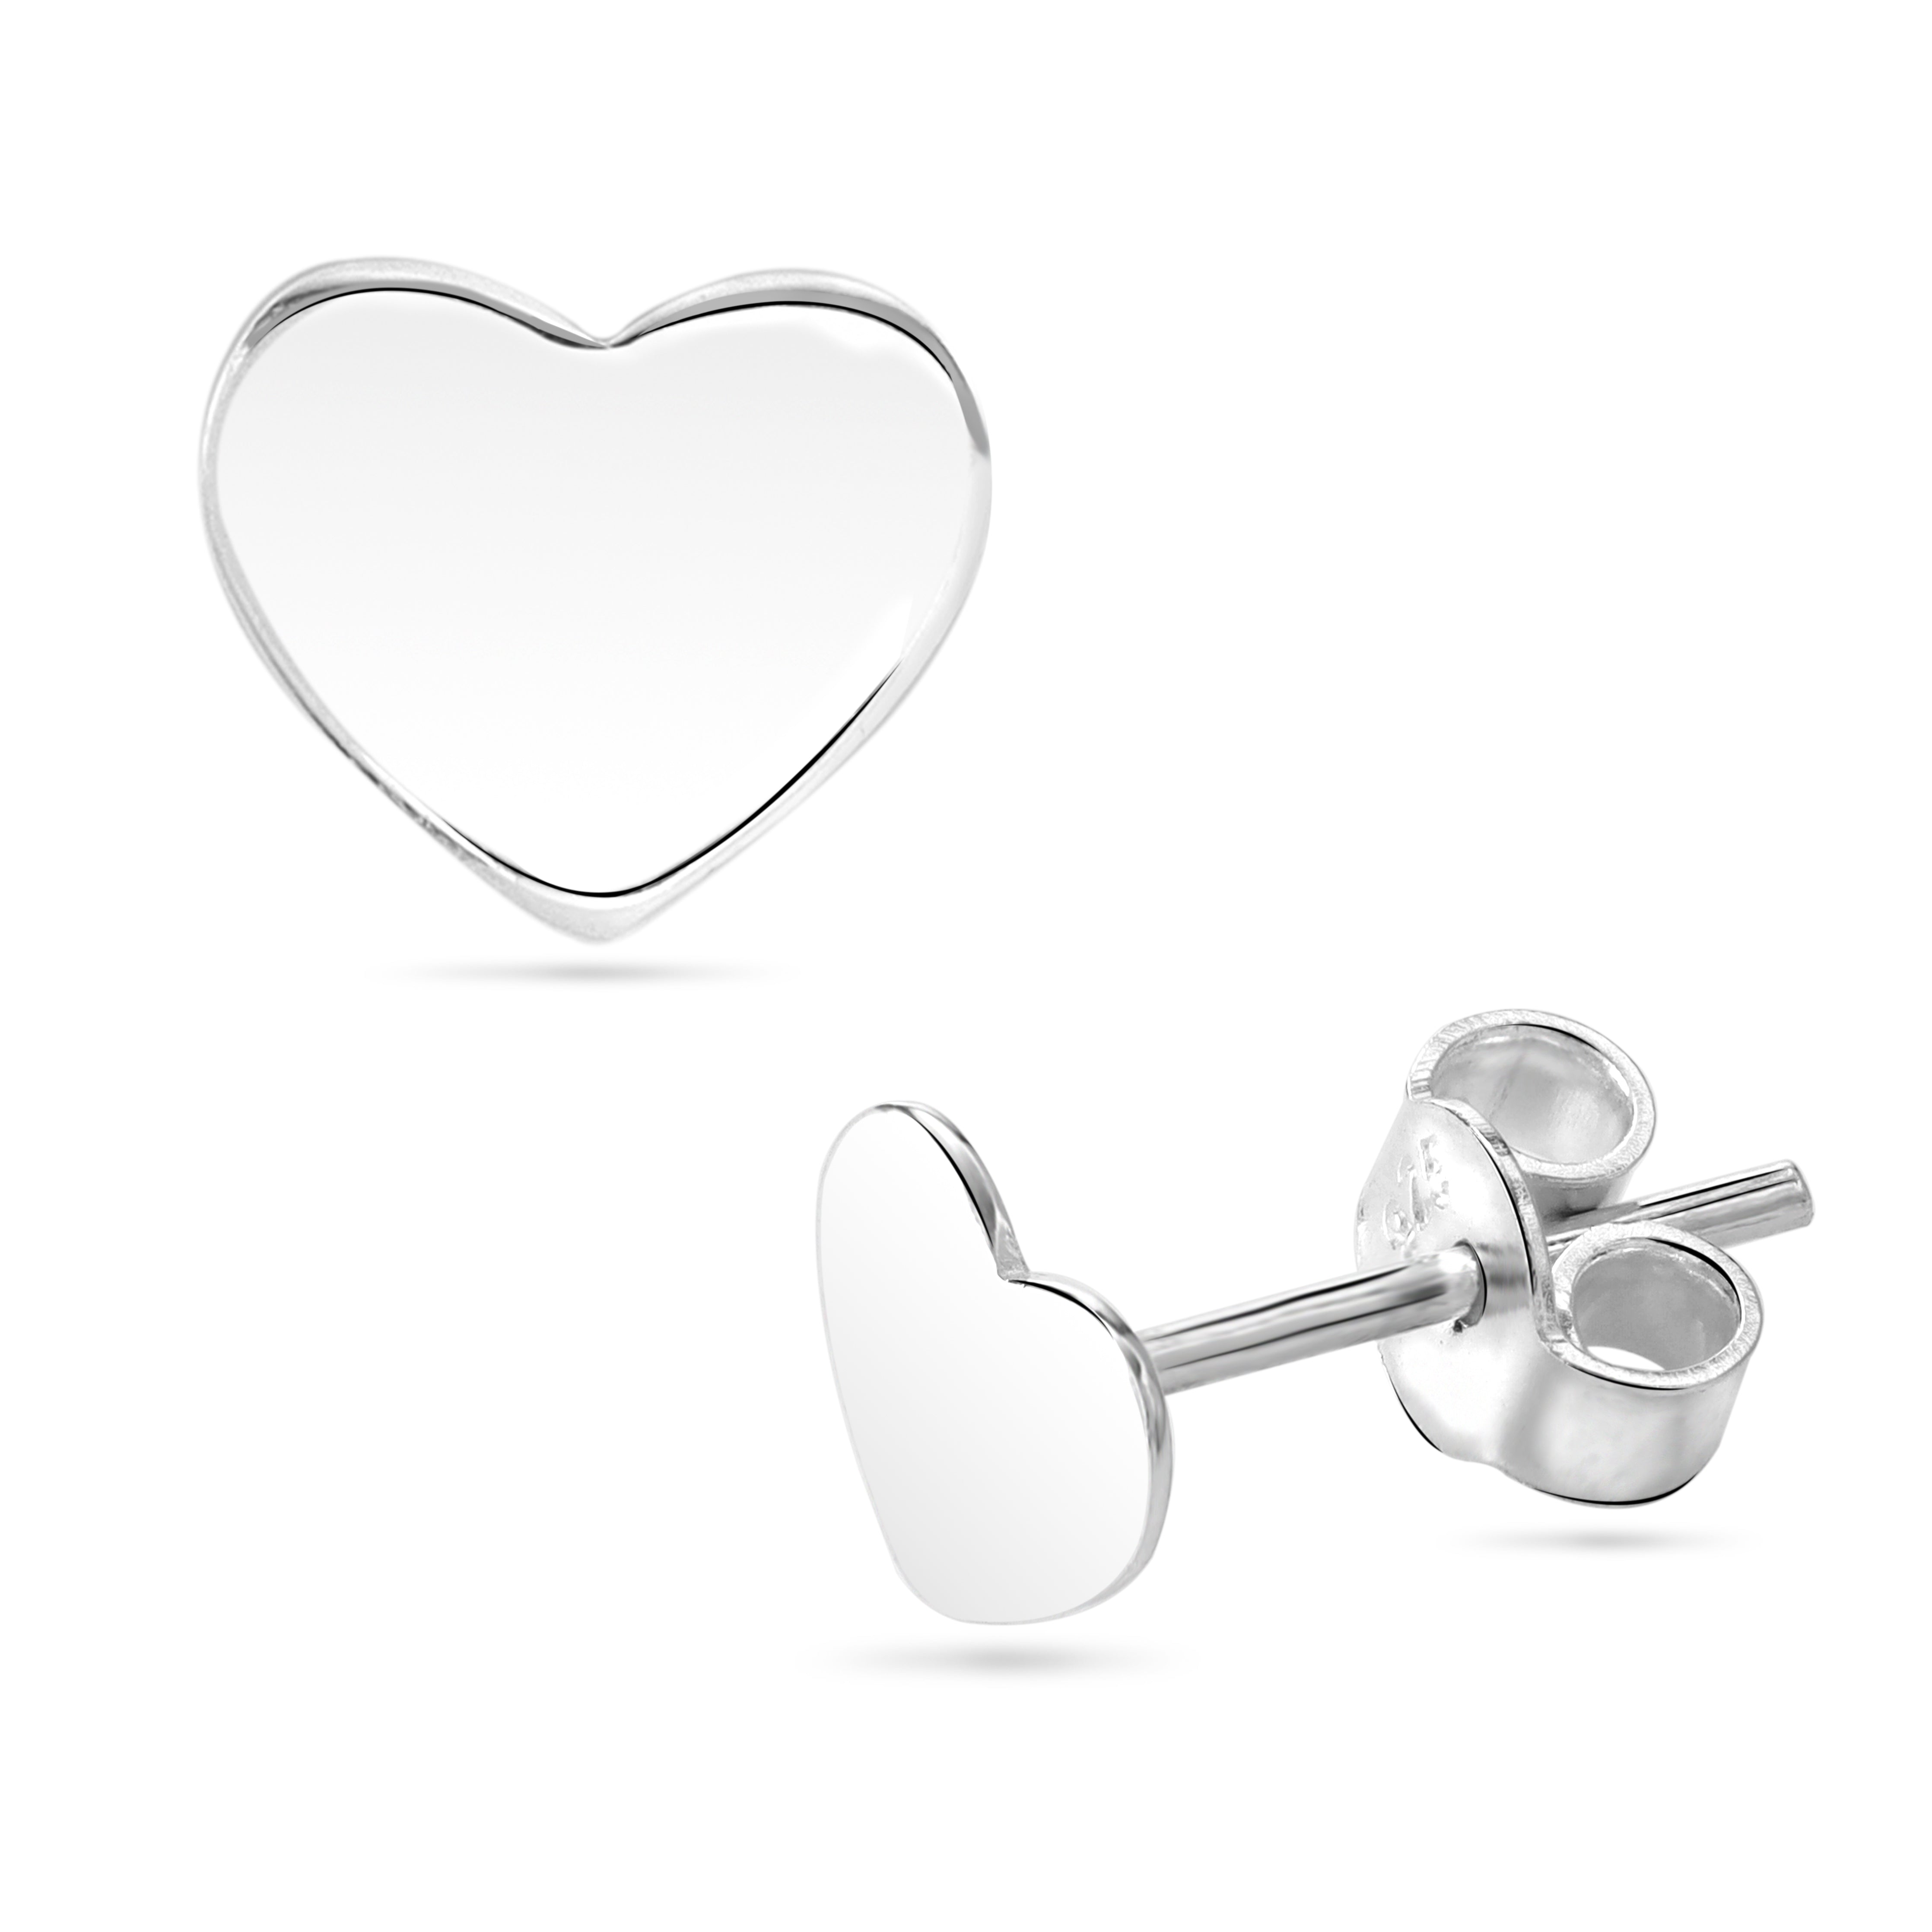 Süße Damen Ohrstecker Ohrringe mit Herz Motiv in klein / mittel / groß aus 925 Sterlingsilber - Taipan Schmuck